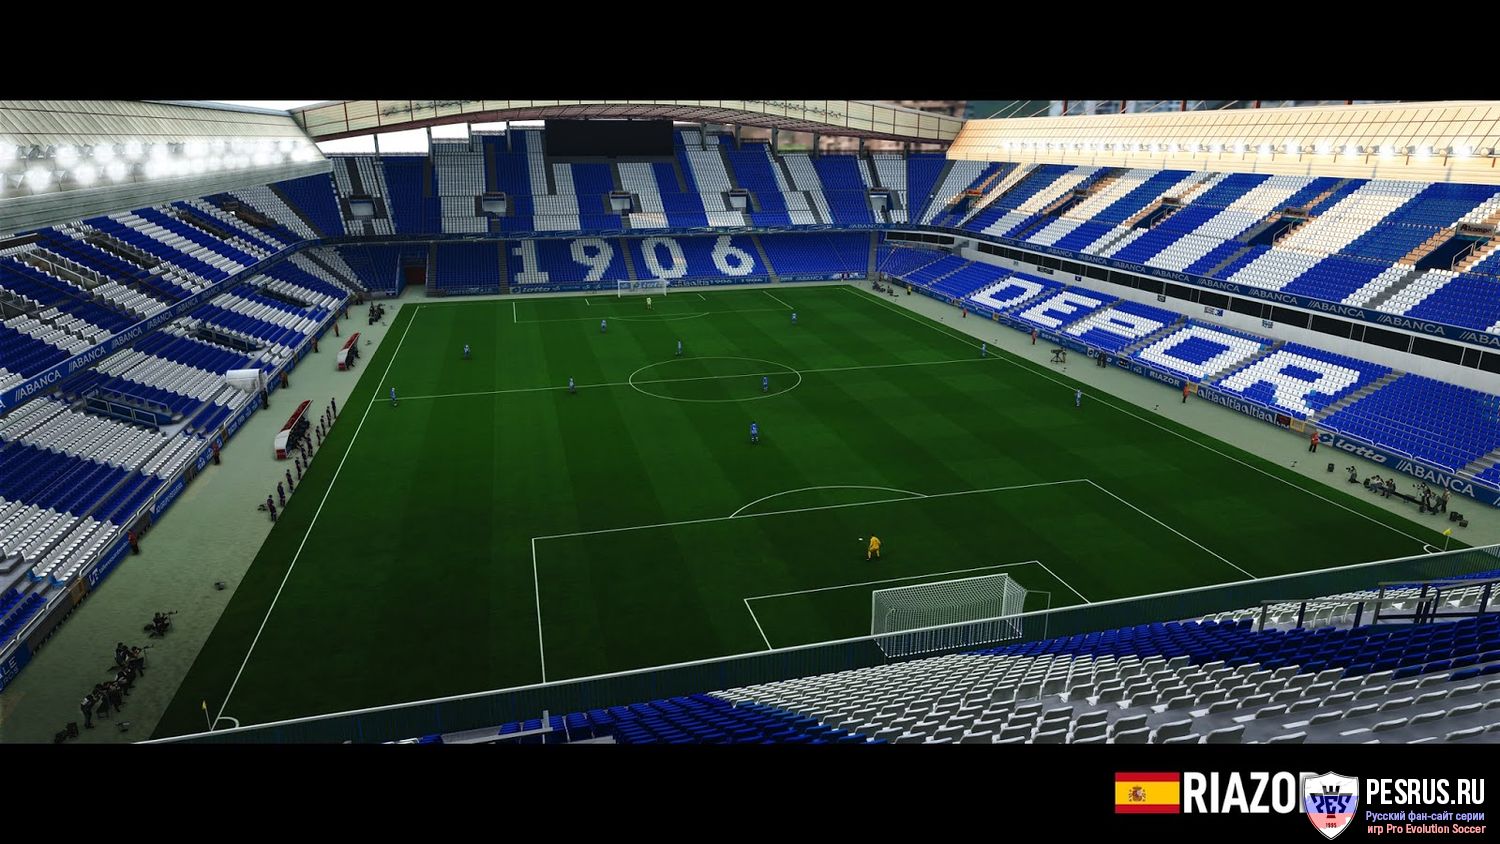 Стадион Риасор для PES 2020